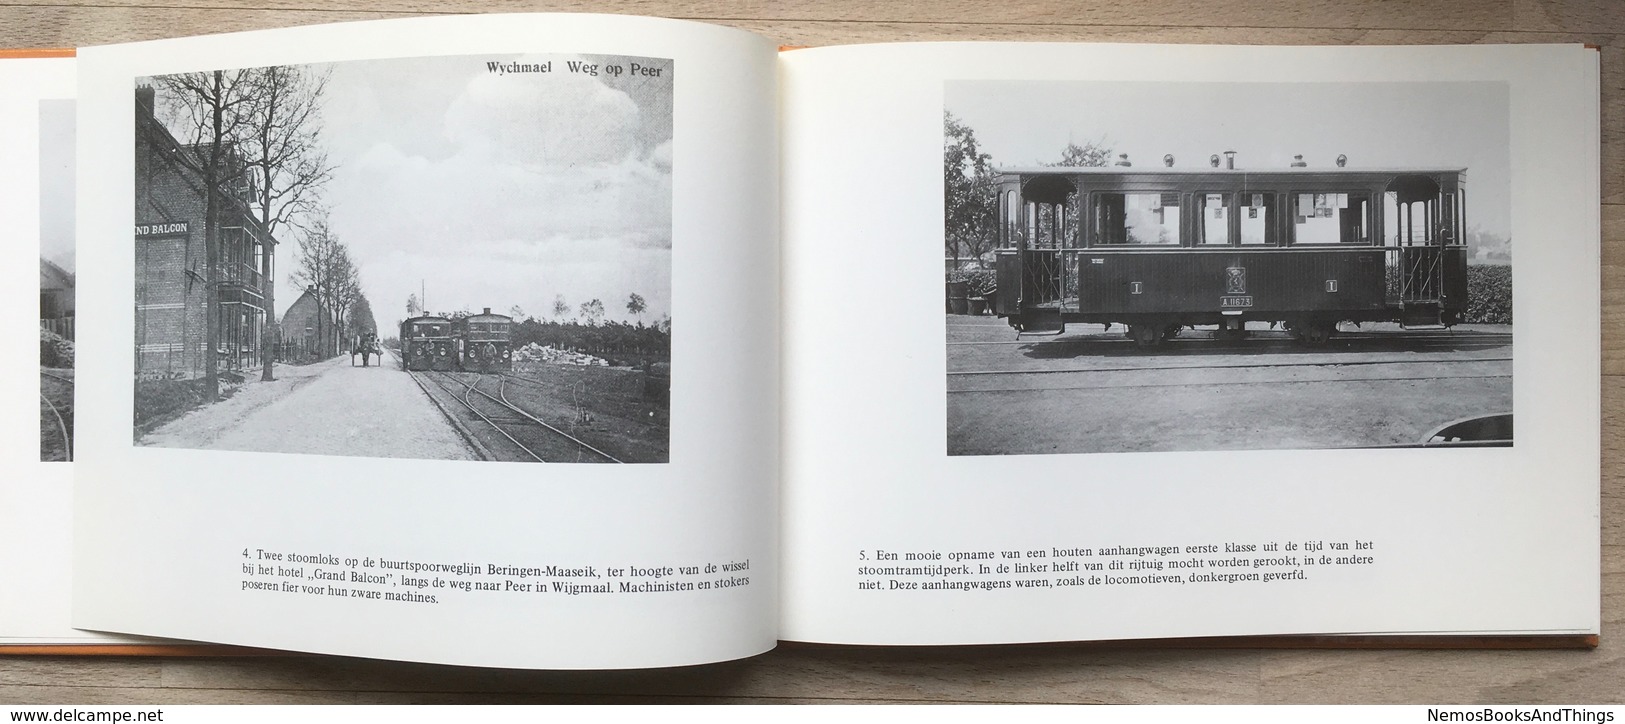 De Limburgse buurttram in beeld - 1980 - Tram